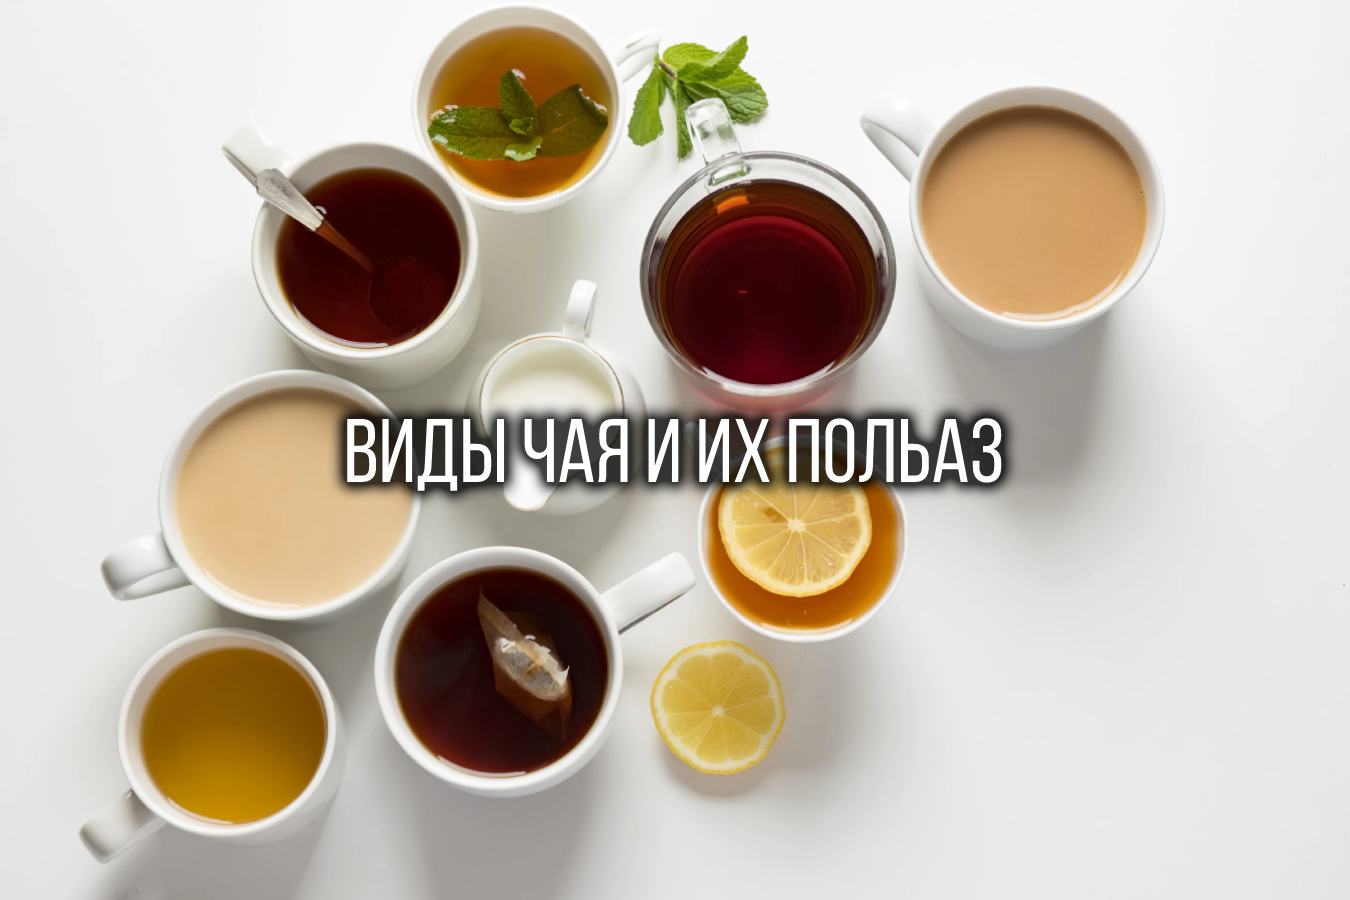 Виды чая и их польза